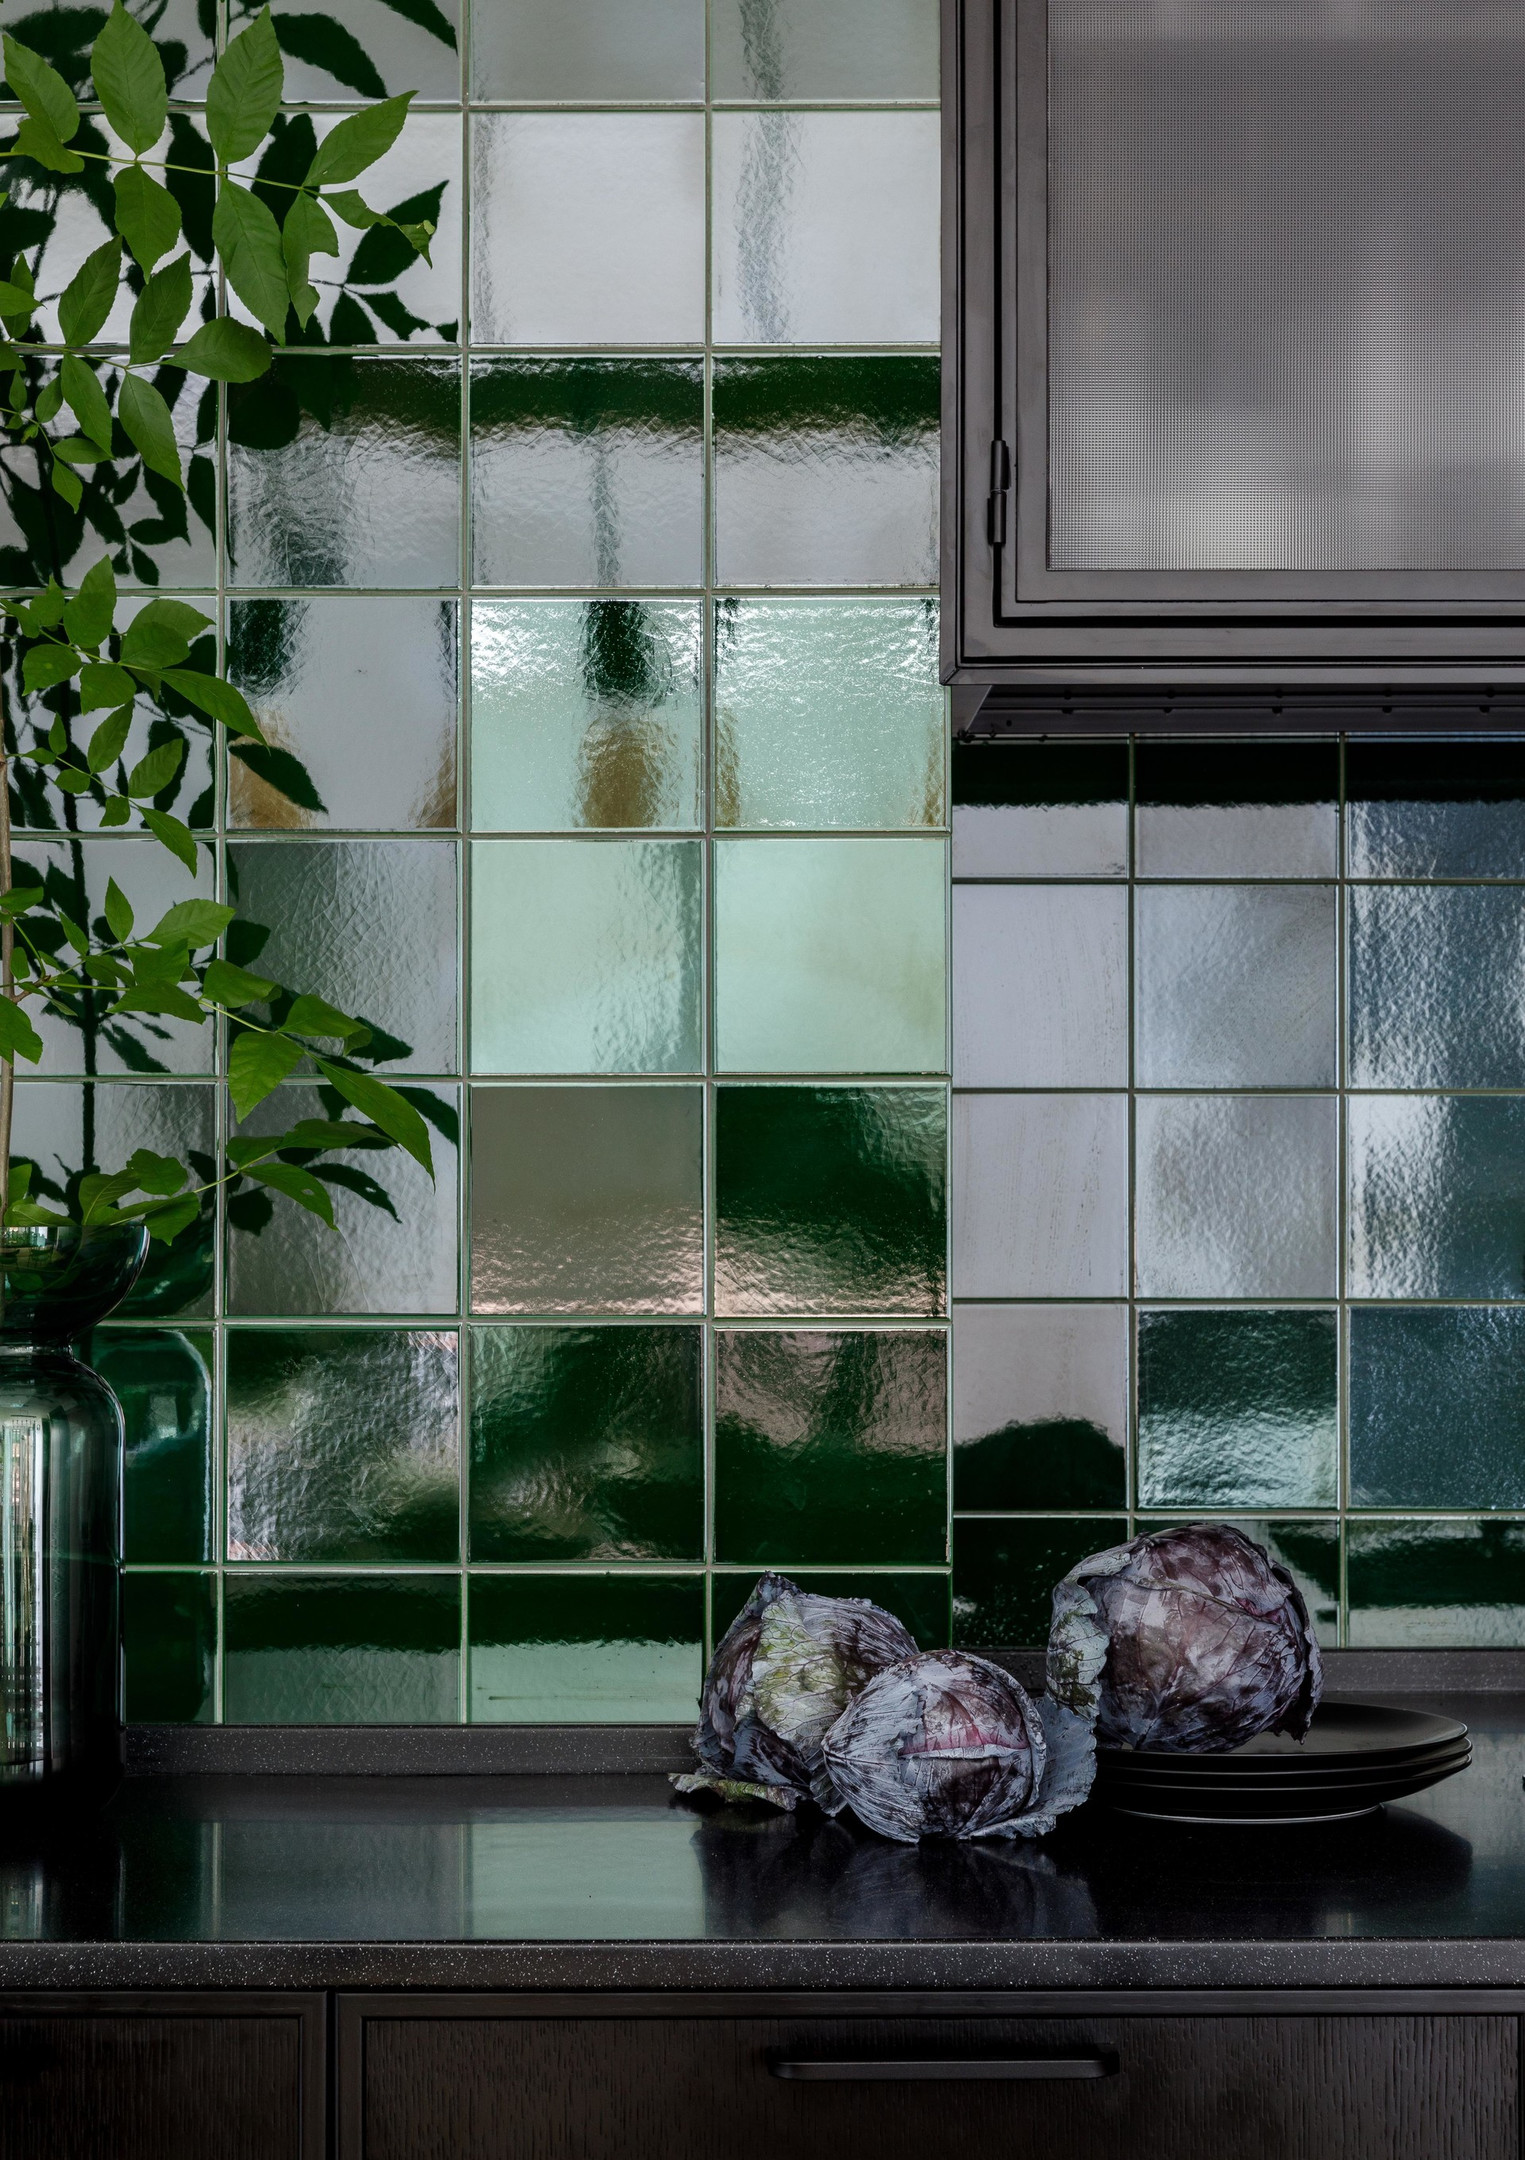 Nhà thiết kế Irina nội thất Mitrofanova đã khéo léo lựa chọn vật liệu gạch ốp backsplash vừa có độ sáng bóng, bề mặt dễ lau chùi, lại có độ sần nhất định nhằm tạo nên nét đẹp sang chảnh cho phòng bếp.